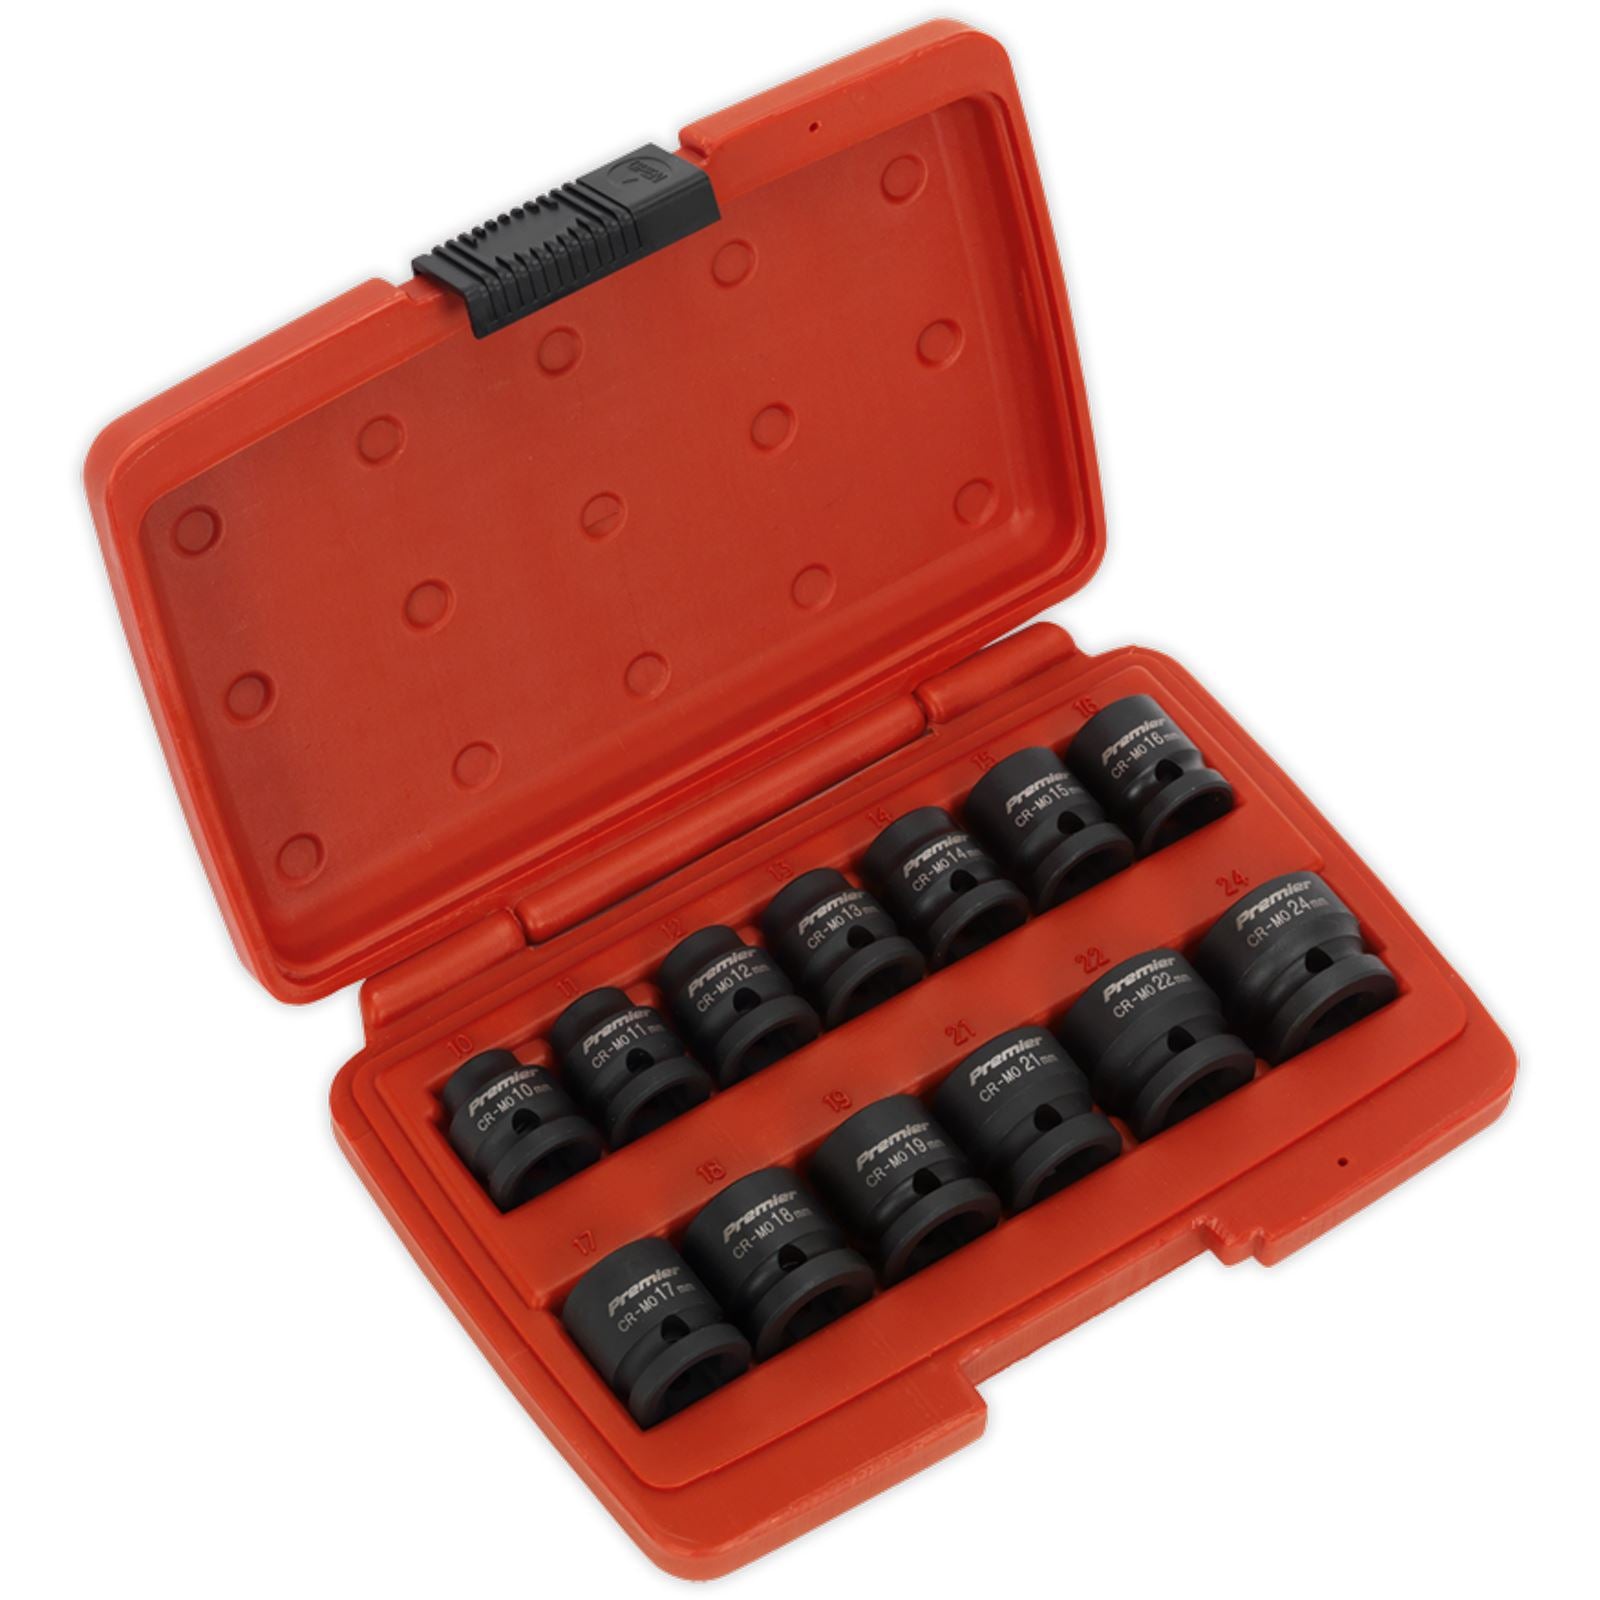 Sealey Premier 13 Piece 1/2" Drive Low Profile Impact Socket Set 10-24mm WallDrive